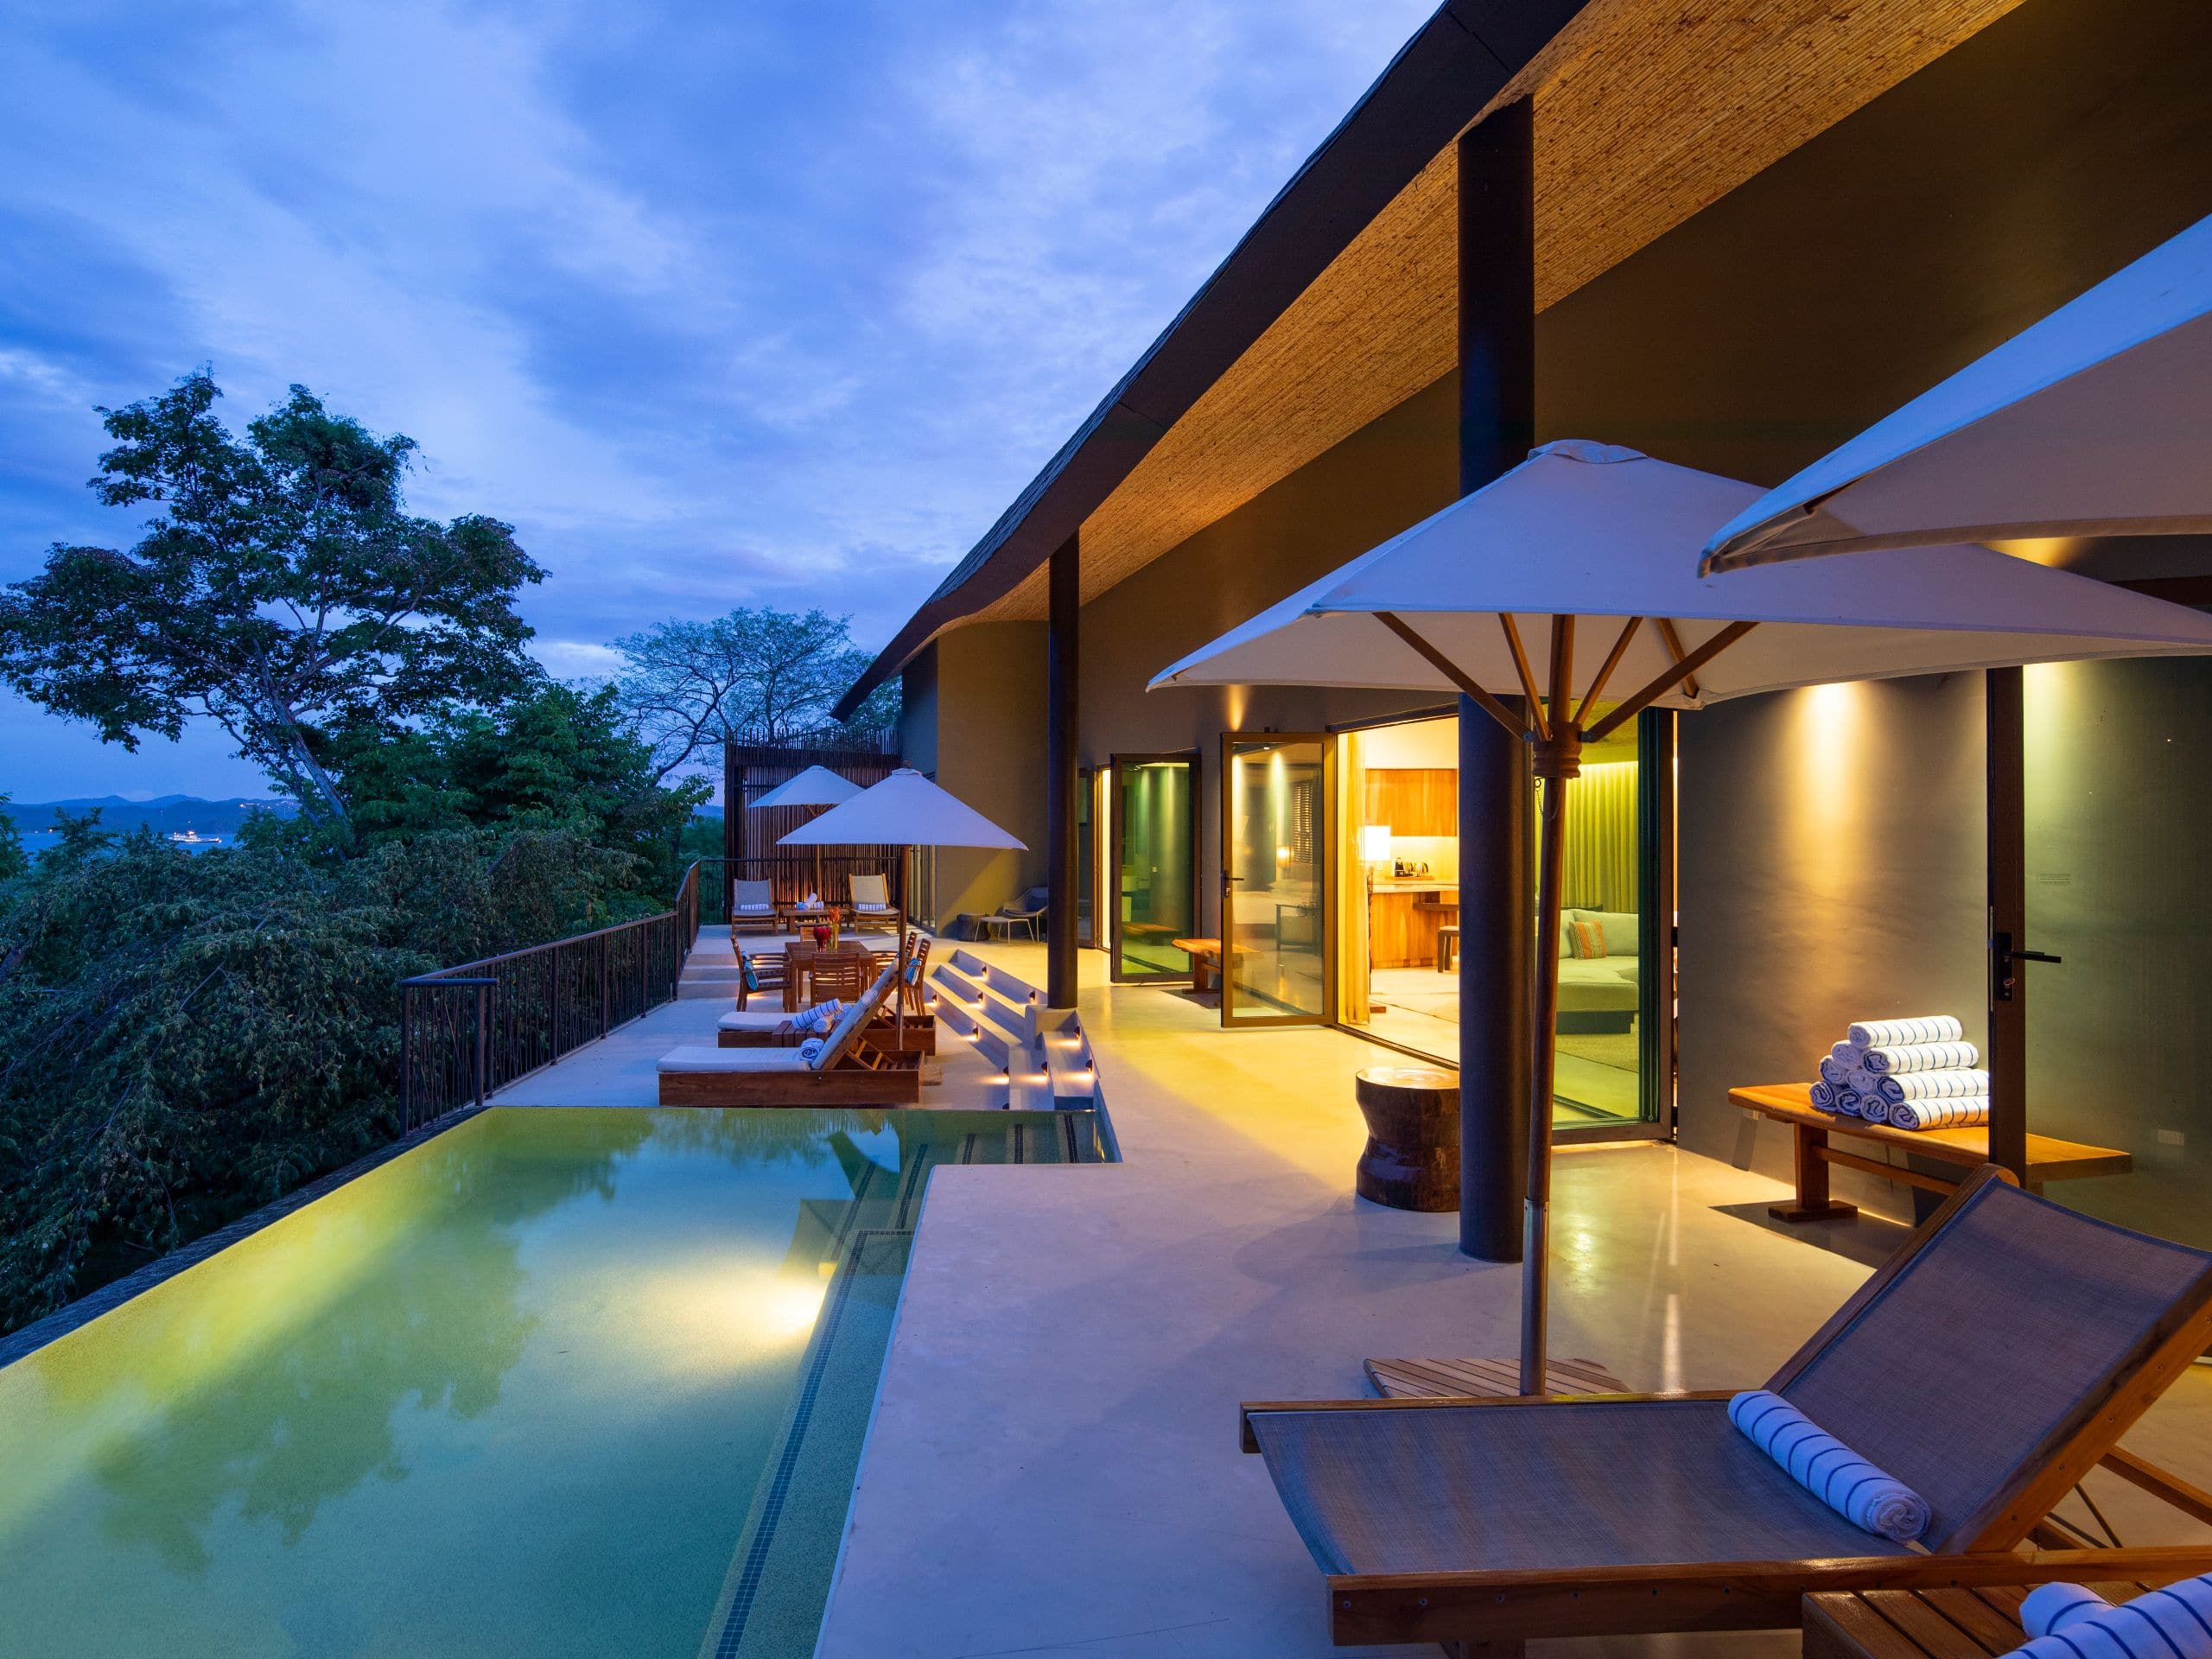 Andaz Costa Rica Resort at Peninsula Papagayo Presidential Suite Pool